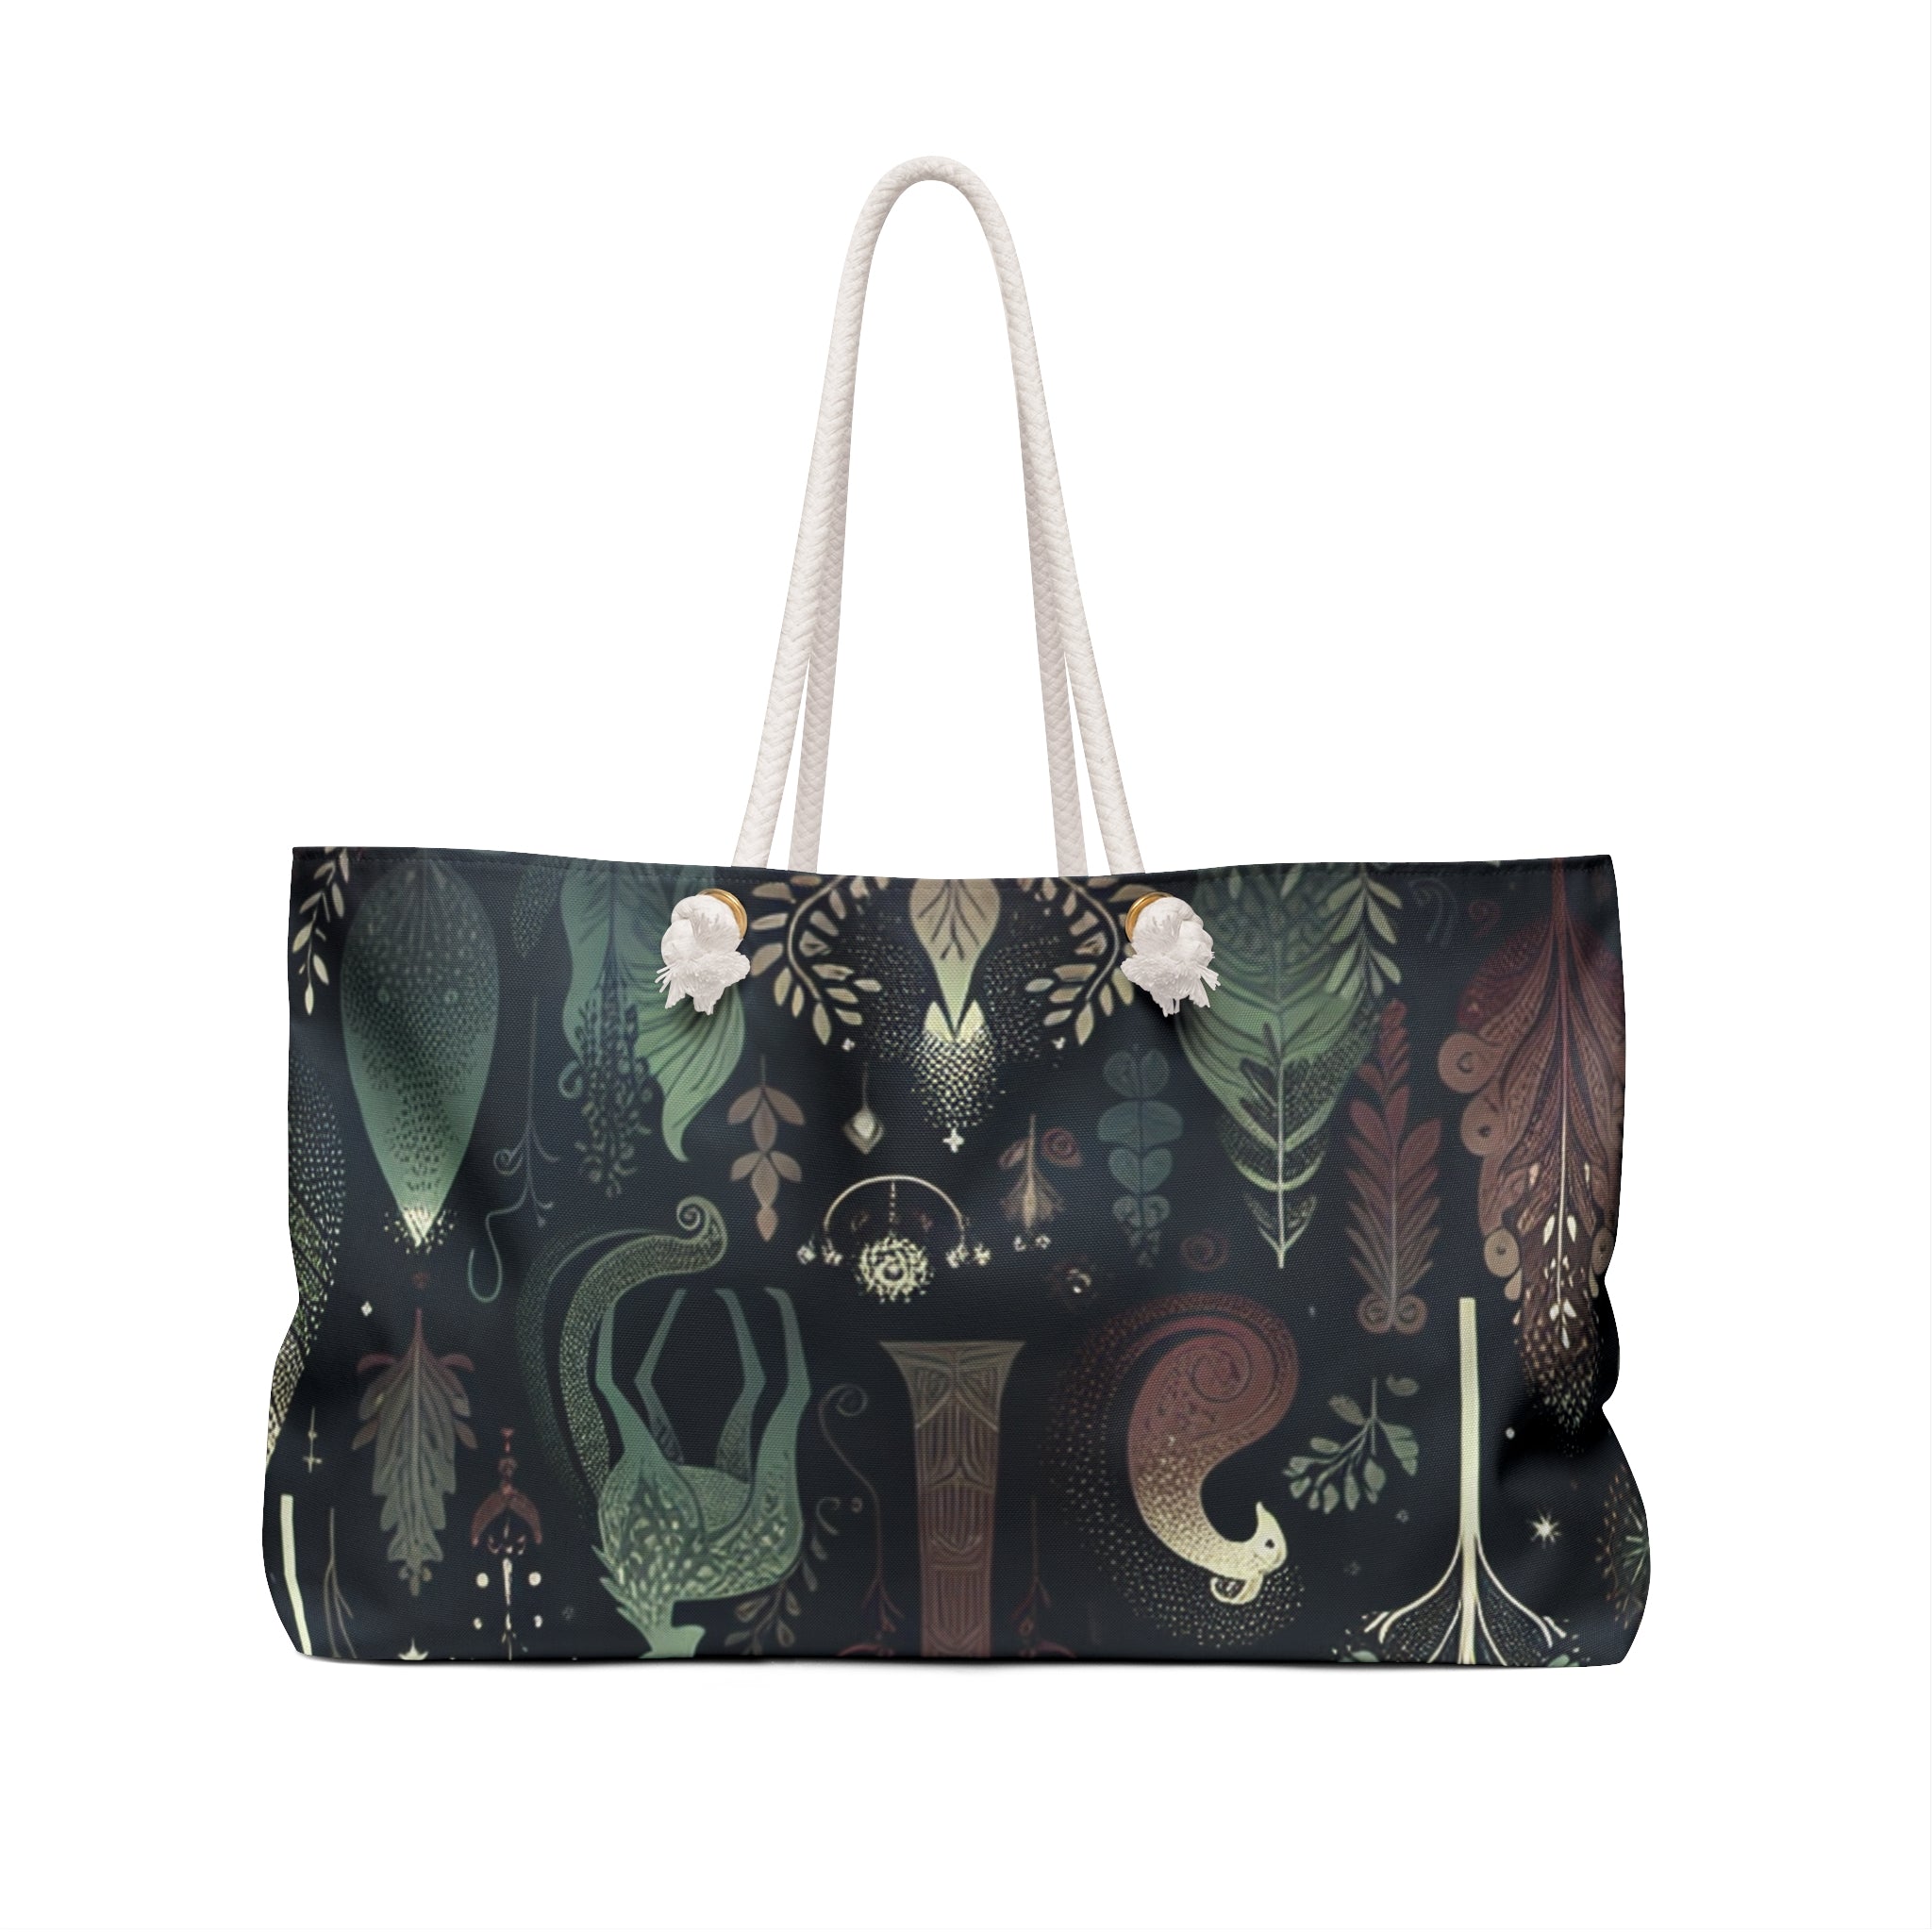 Amelia Beaumont - Weekender Bag